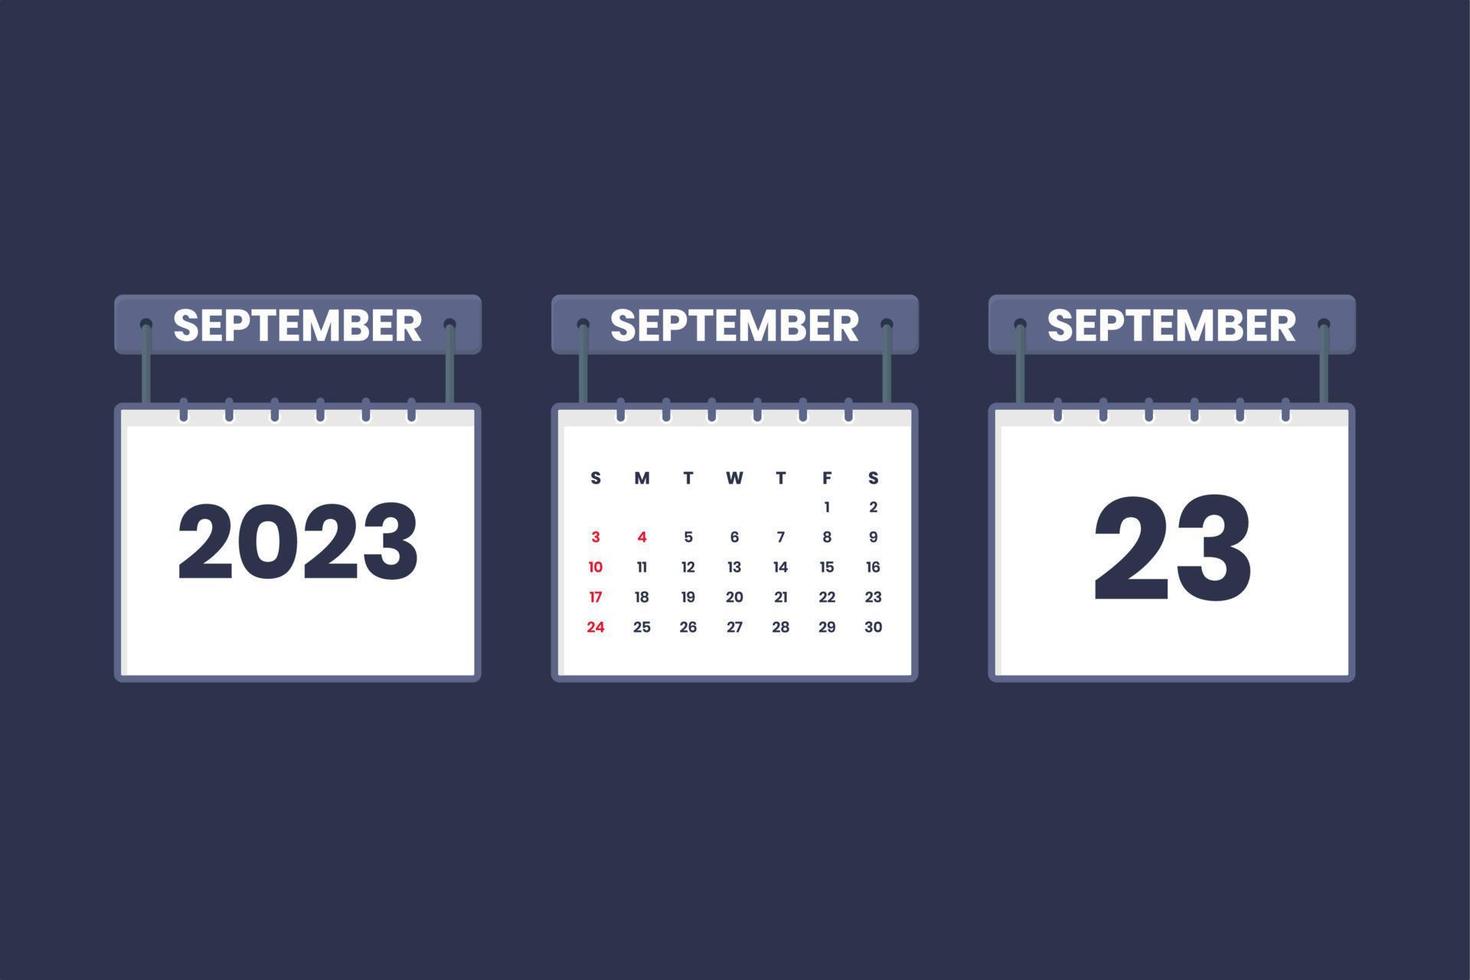 23. September 2023 Kalendersymbol für Zeitplan, Termin, wichtiges Datumskonzept vektor